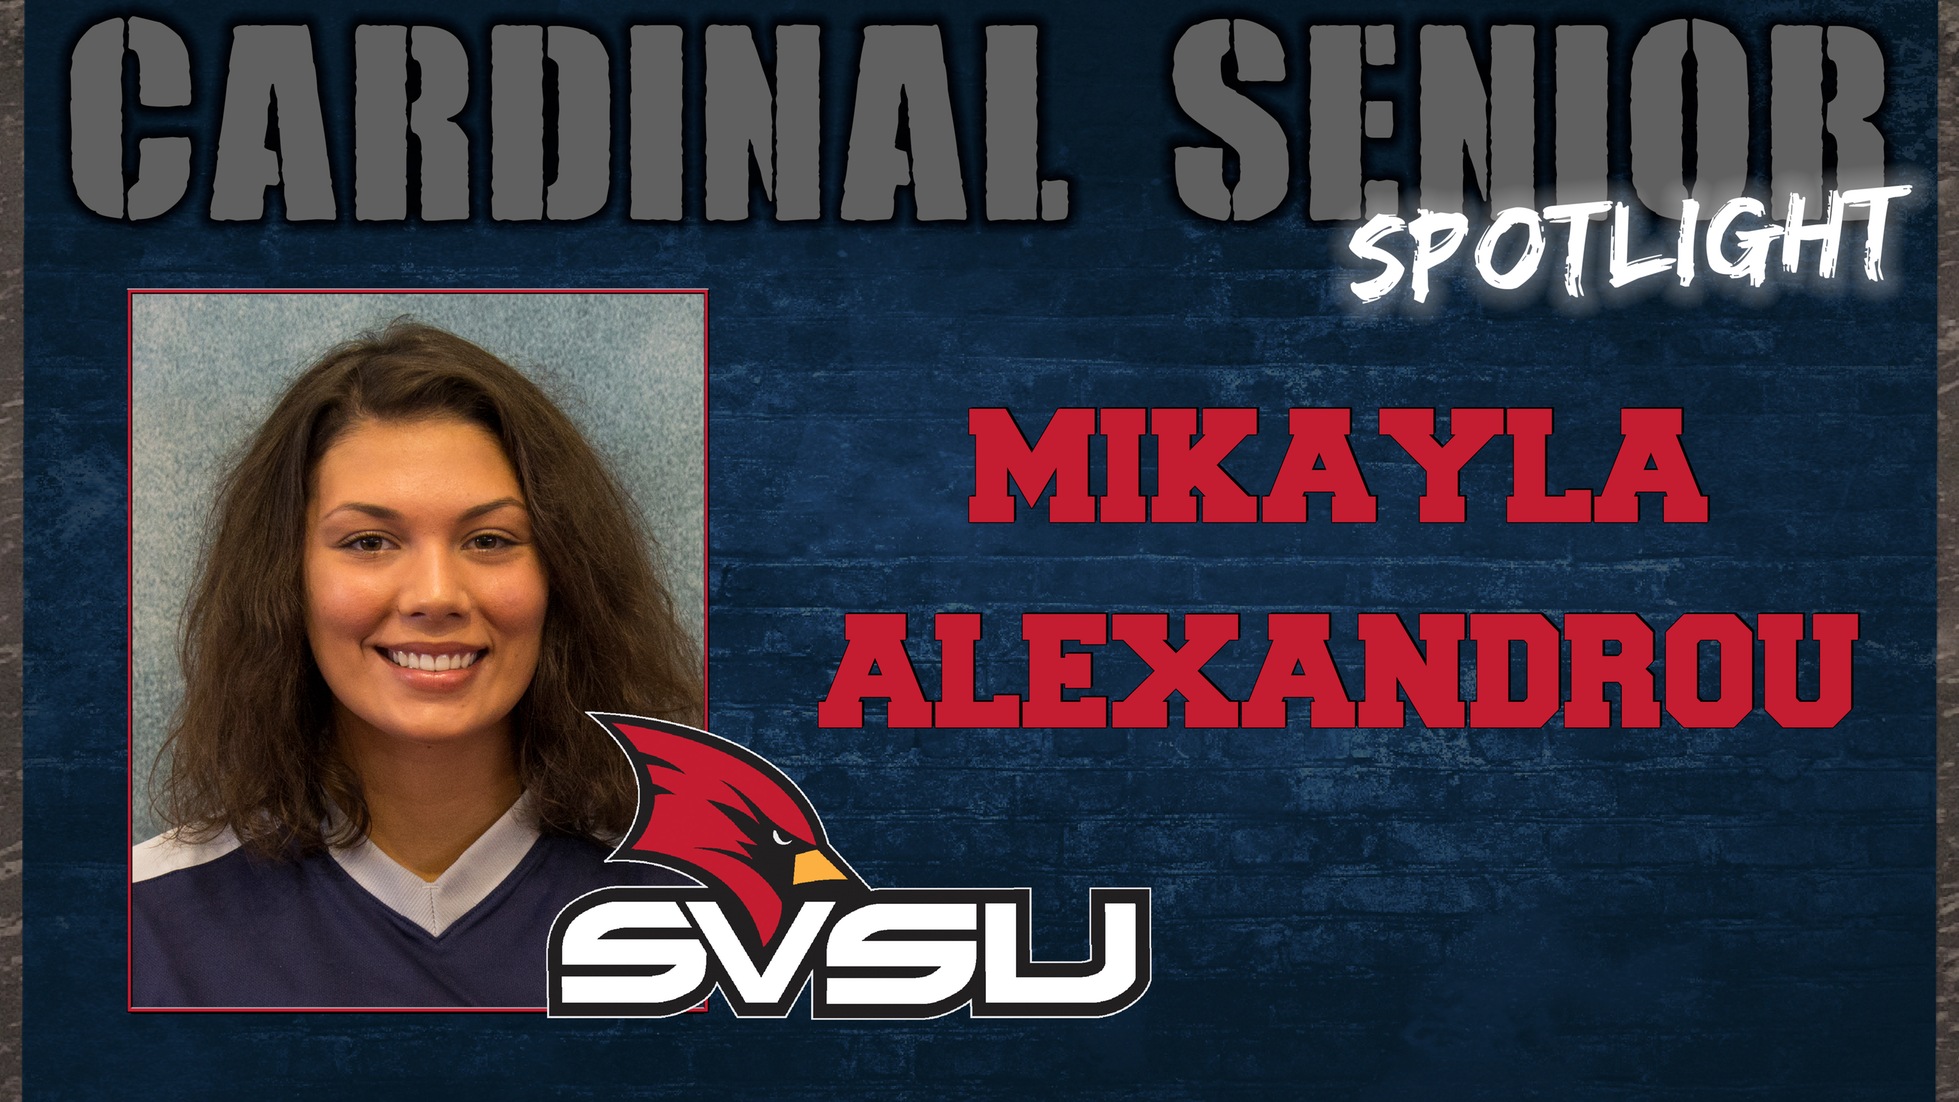 SVSU Cardinal Senior Spotlight - Mikayla Alexandrou